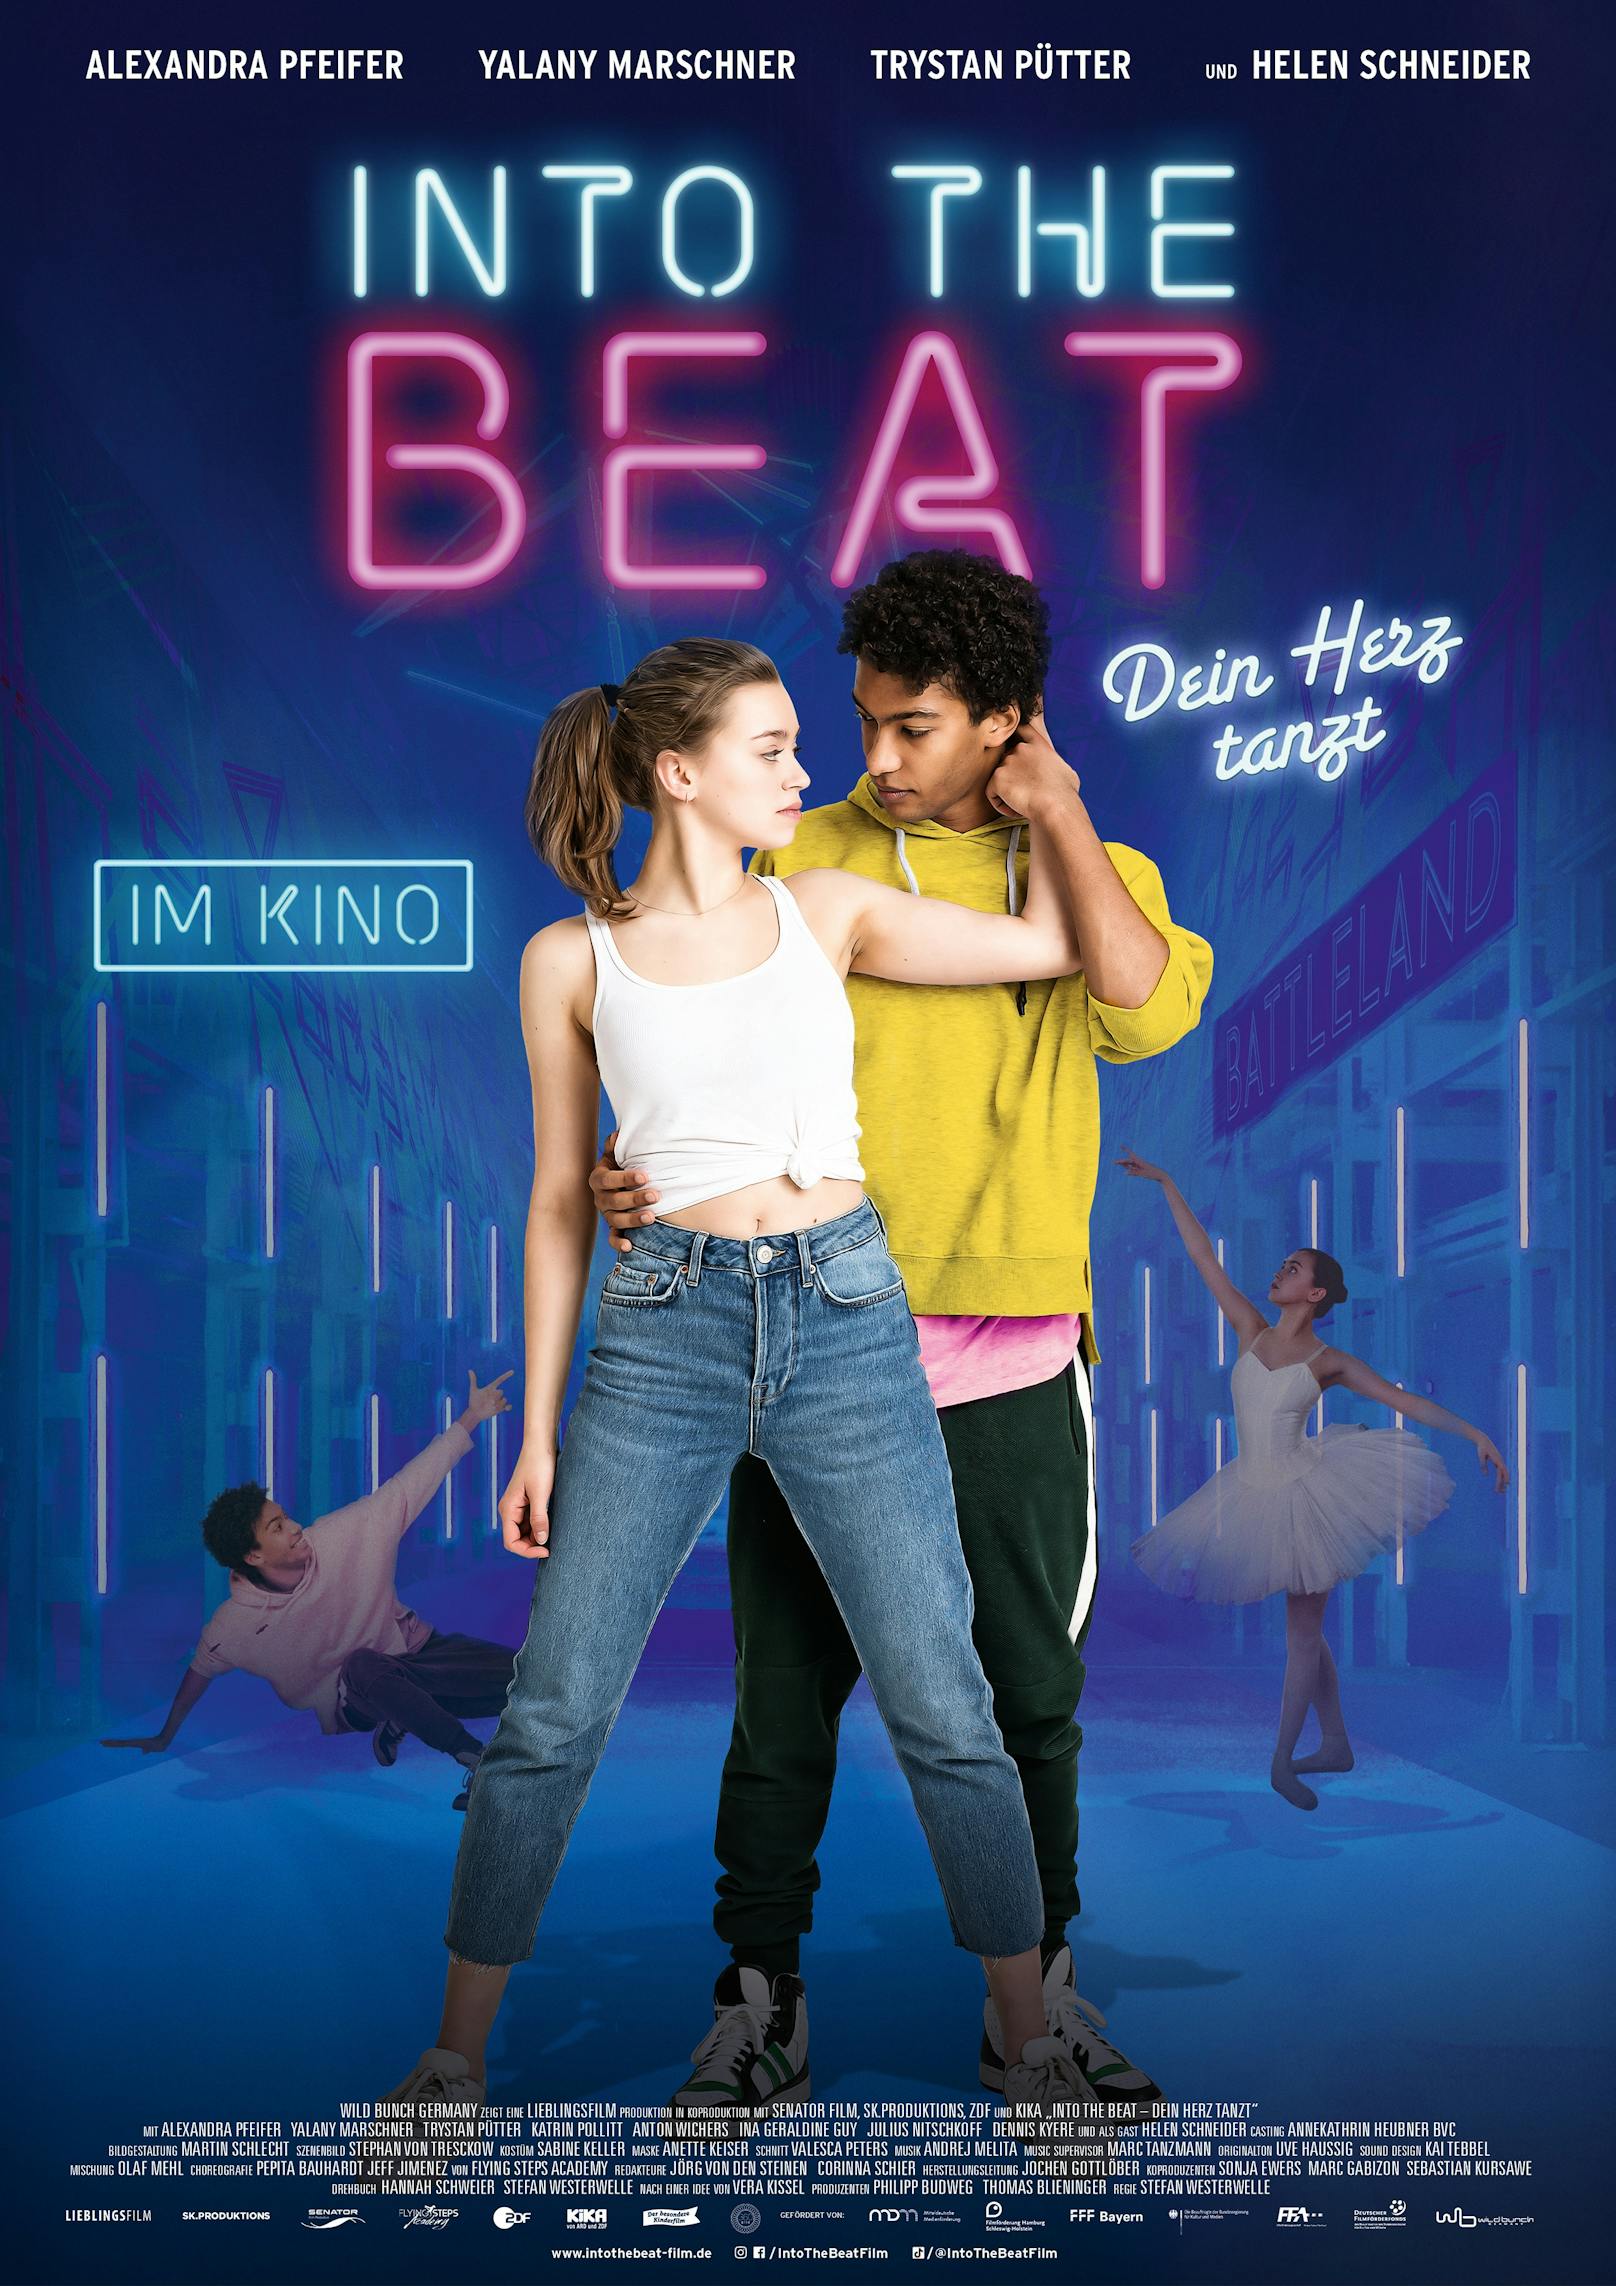 Der Film "Into the beat – Dein Herz tanzt" startet am 6. August im Kino.